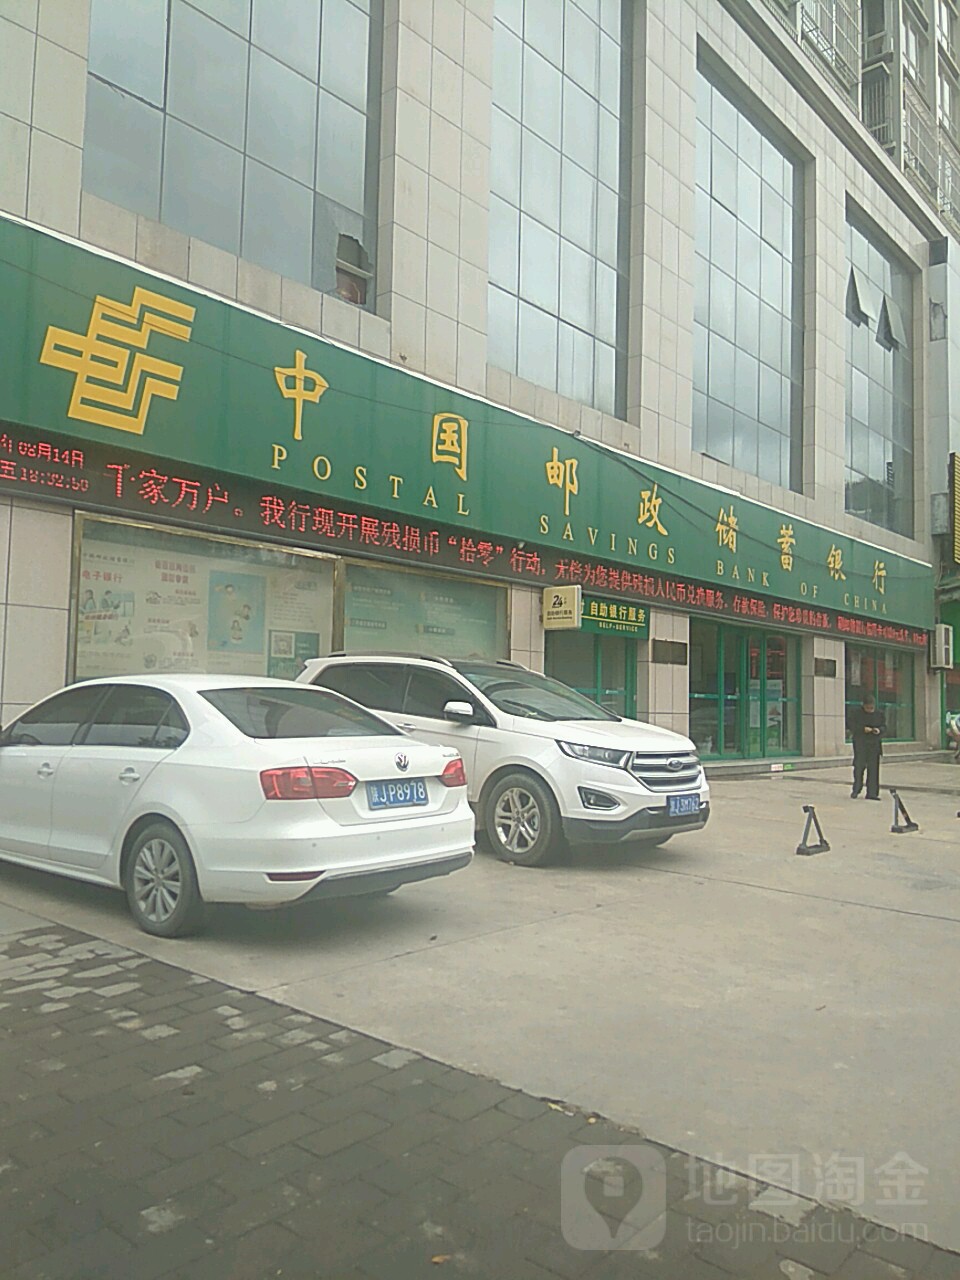 中國郵政儲蓄銀行ATM